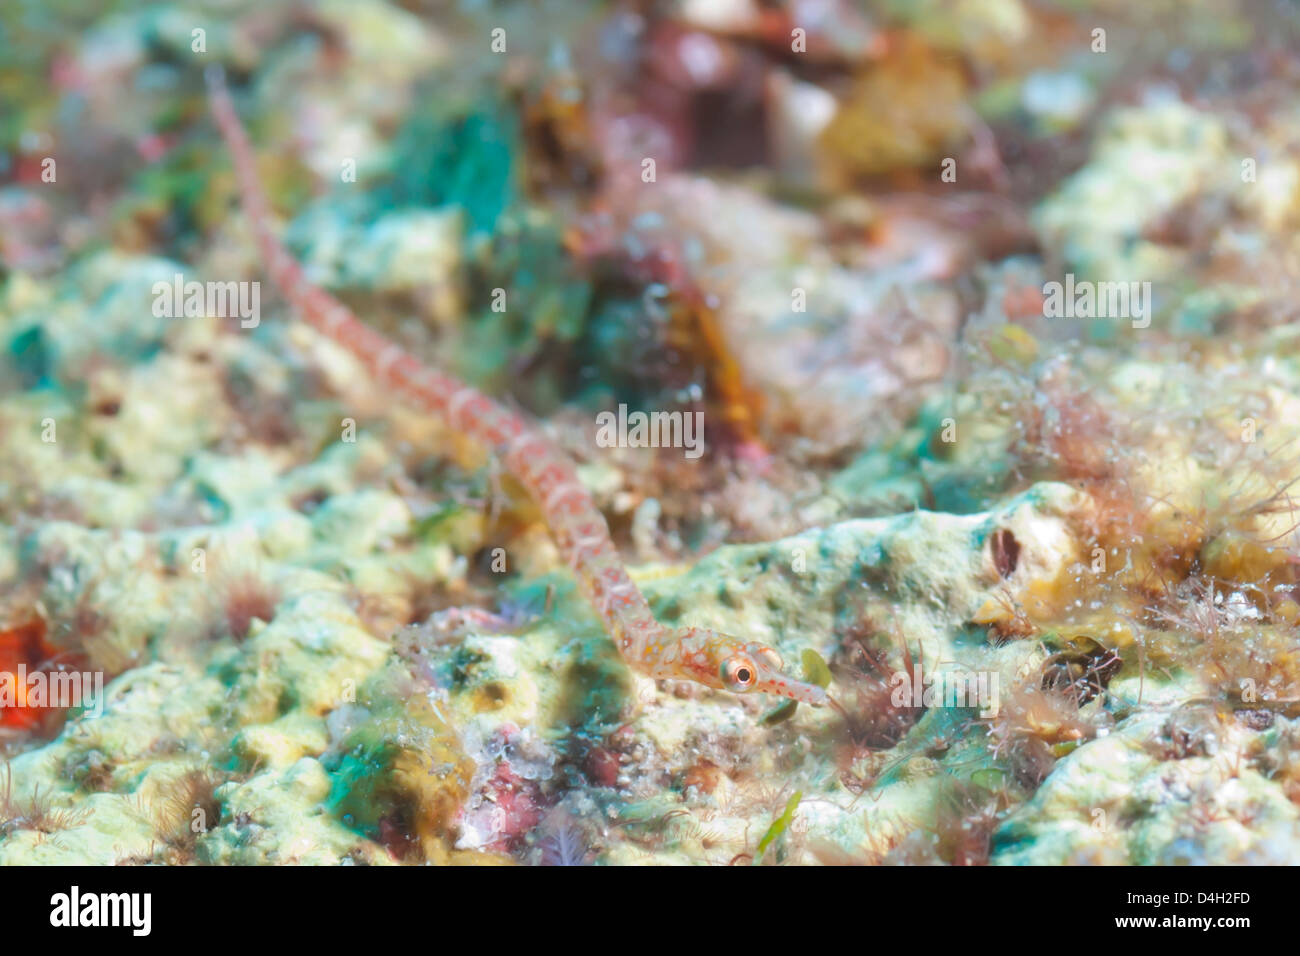 Agujas de mar (Corythoichthys), el sur de Tailandia, el Mar de Andamán, Océano Índico Foto de stock